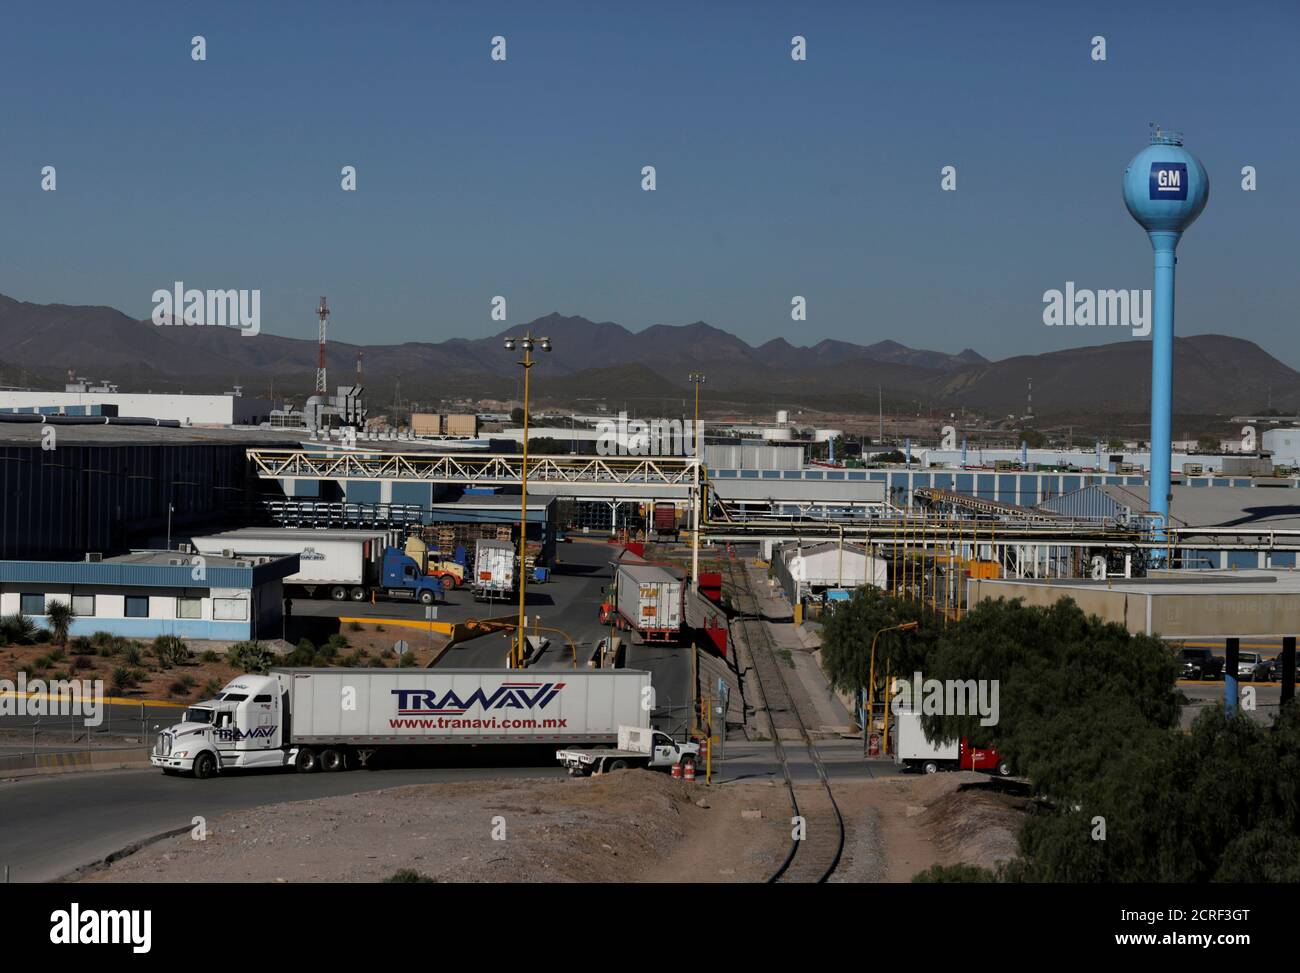 Ramos arizpe mexico fotografías e imágenes de alta resolución - Alamy